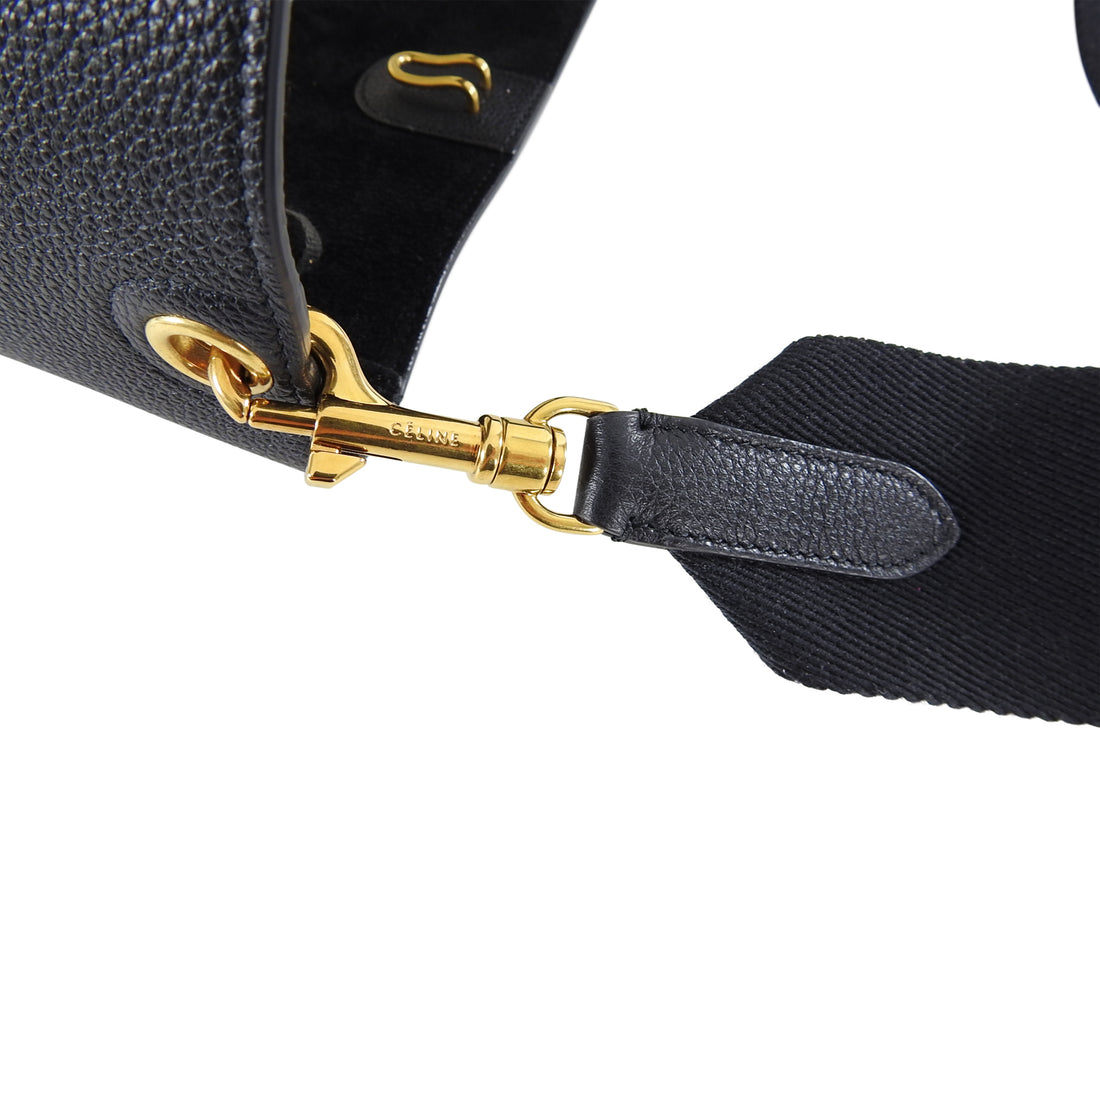 Celine Sangle Small Black Grained Leather Shoulder Bag